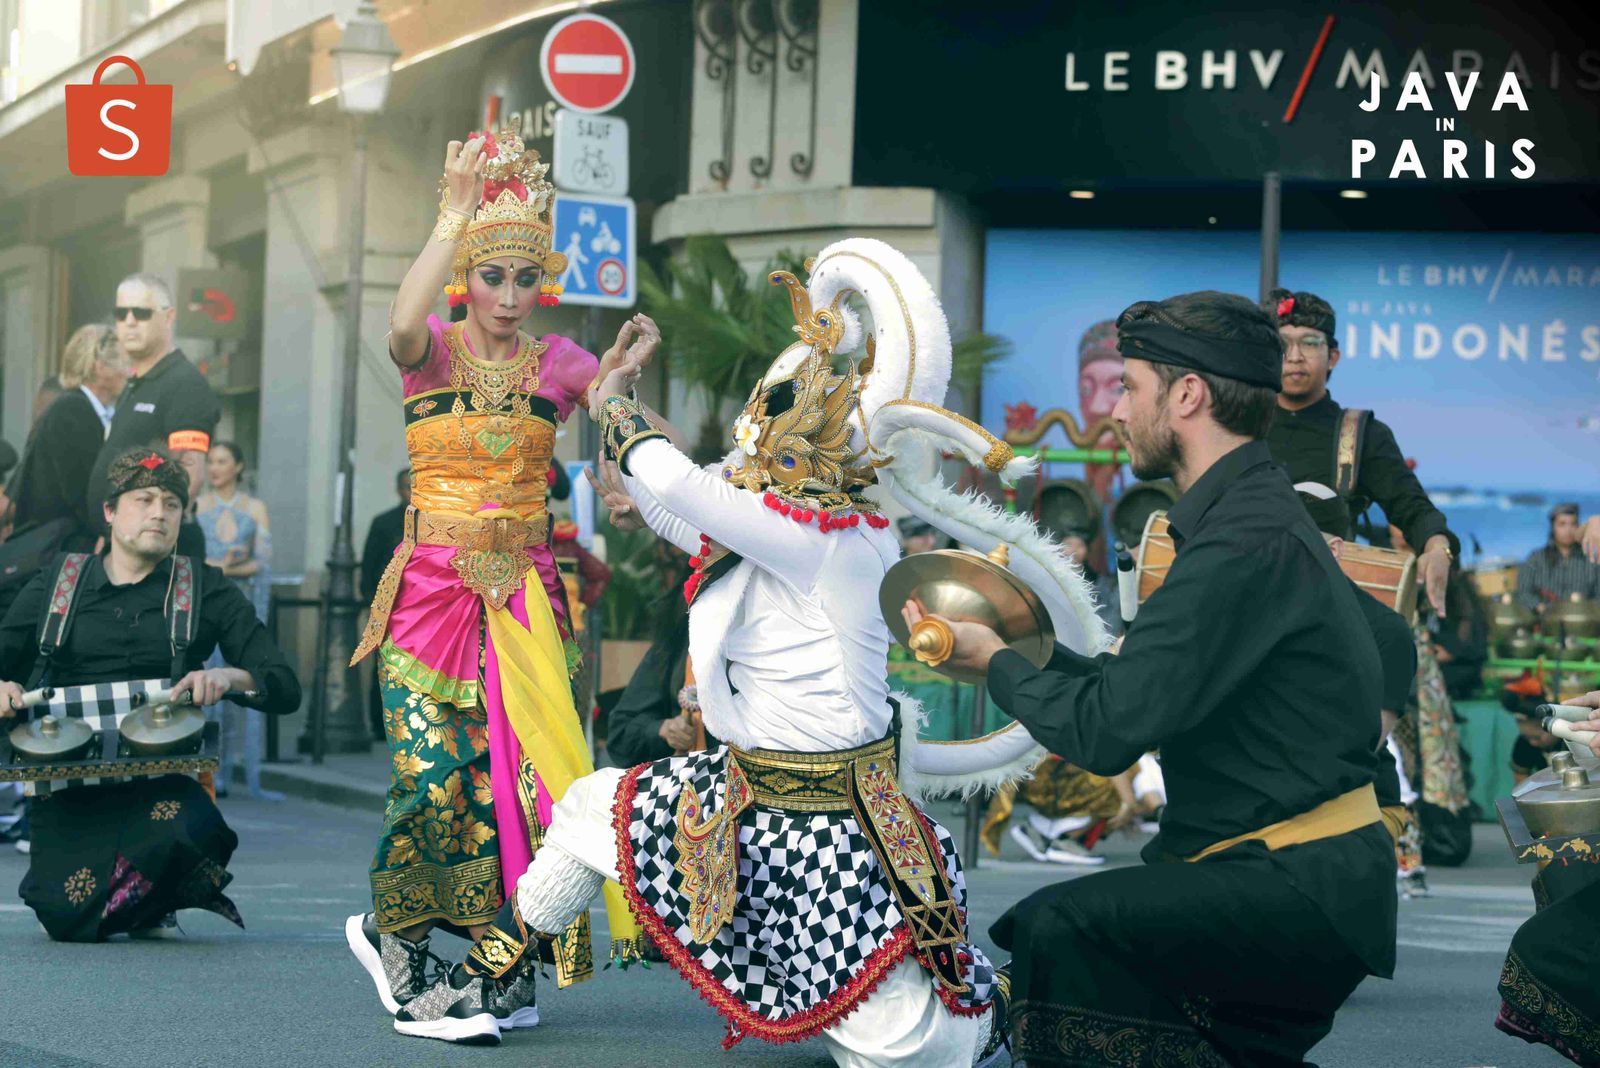 Keseruan Tampilan tarian pada acara Java in Paris